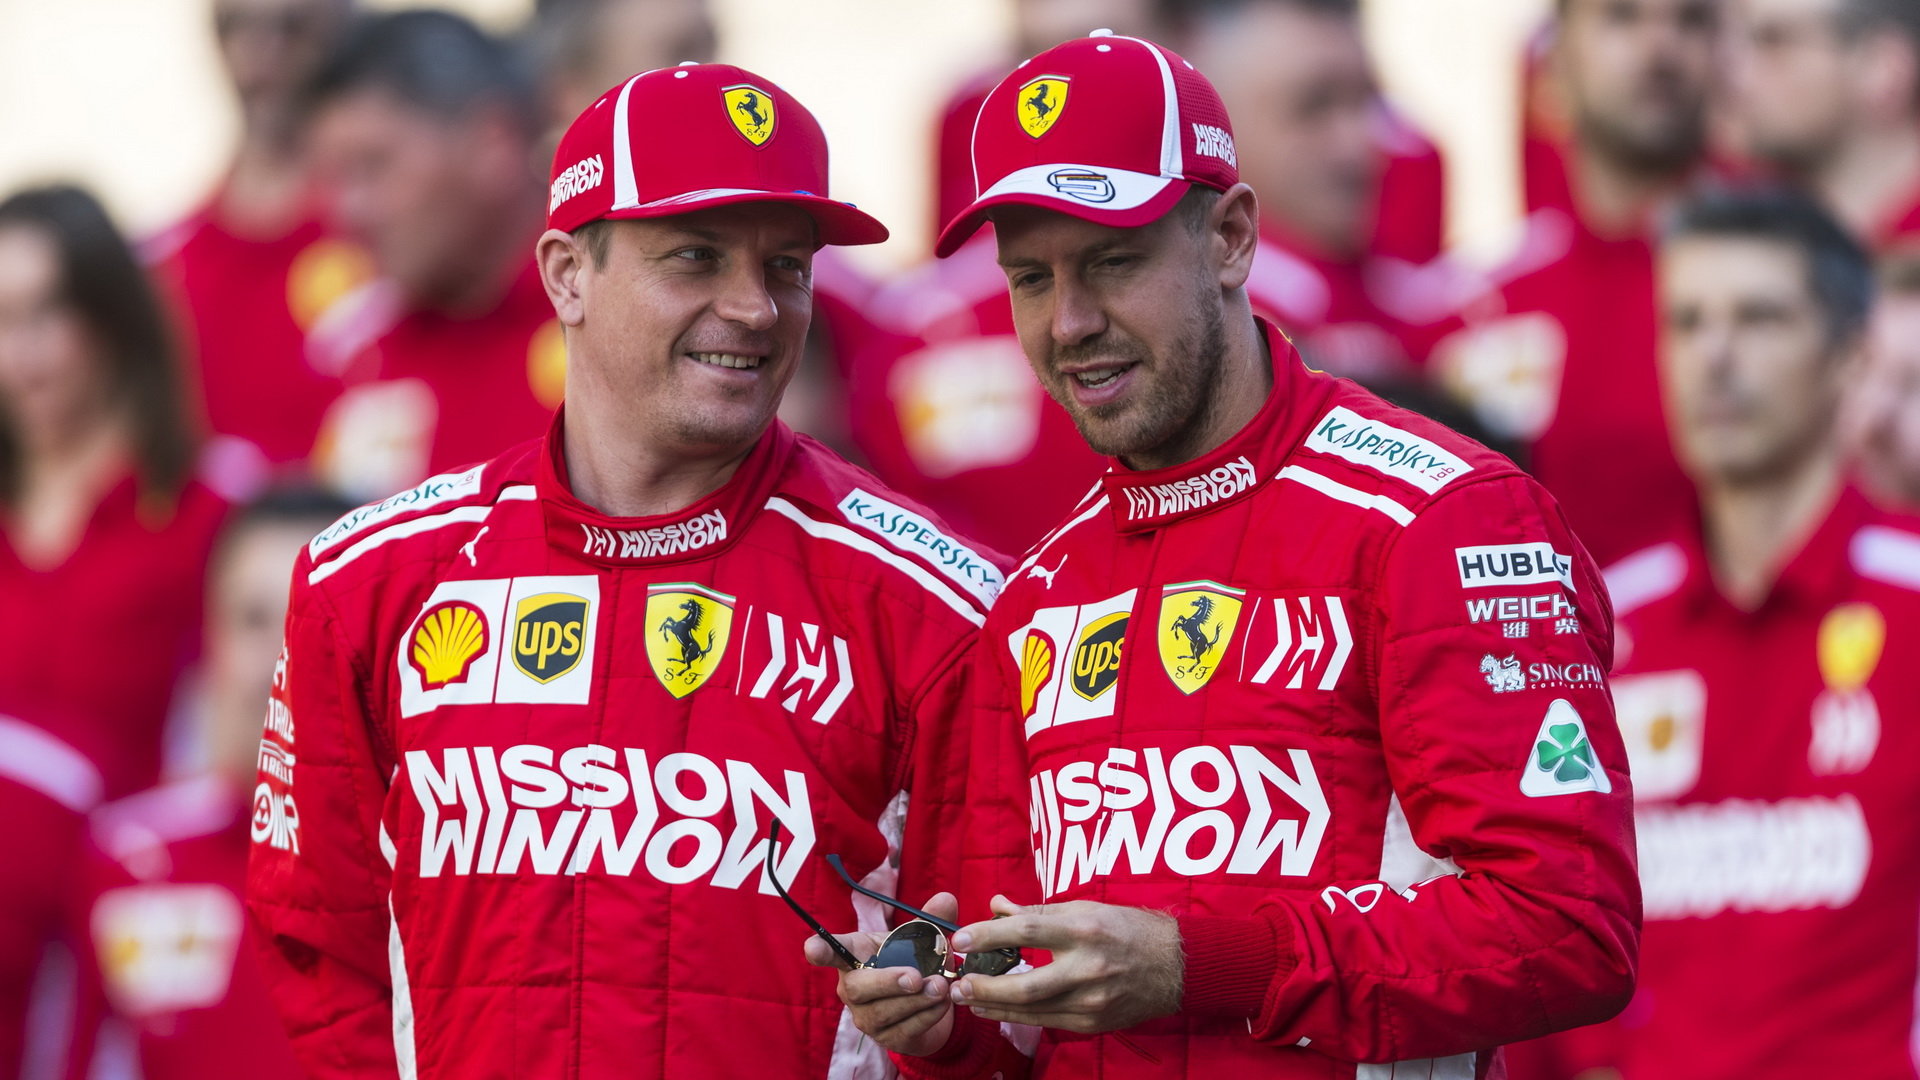 S Kimim Räikkönenem si Sebastian Vettel snadno poradil, teď se změnou týmového kolegy bude muset podle Christiana Hornera zabrat